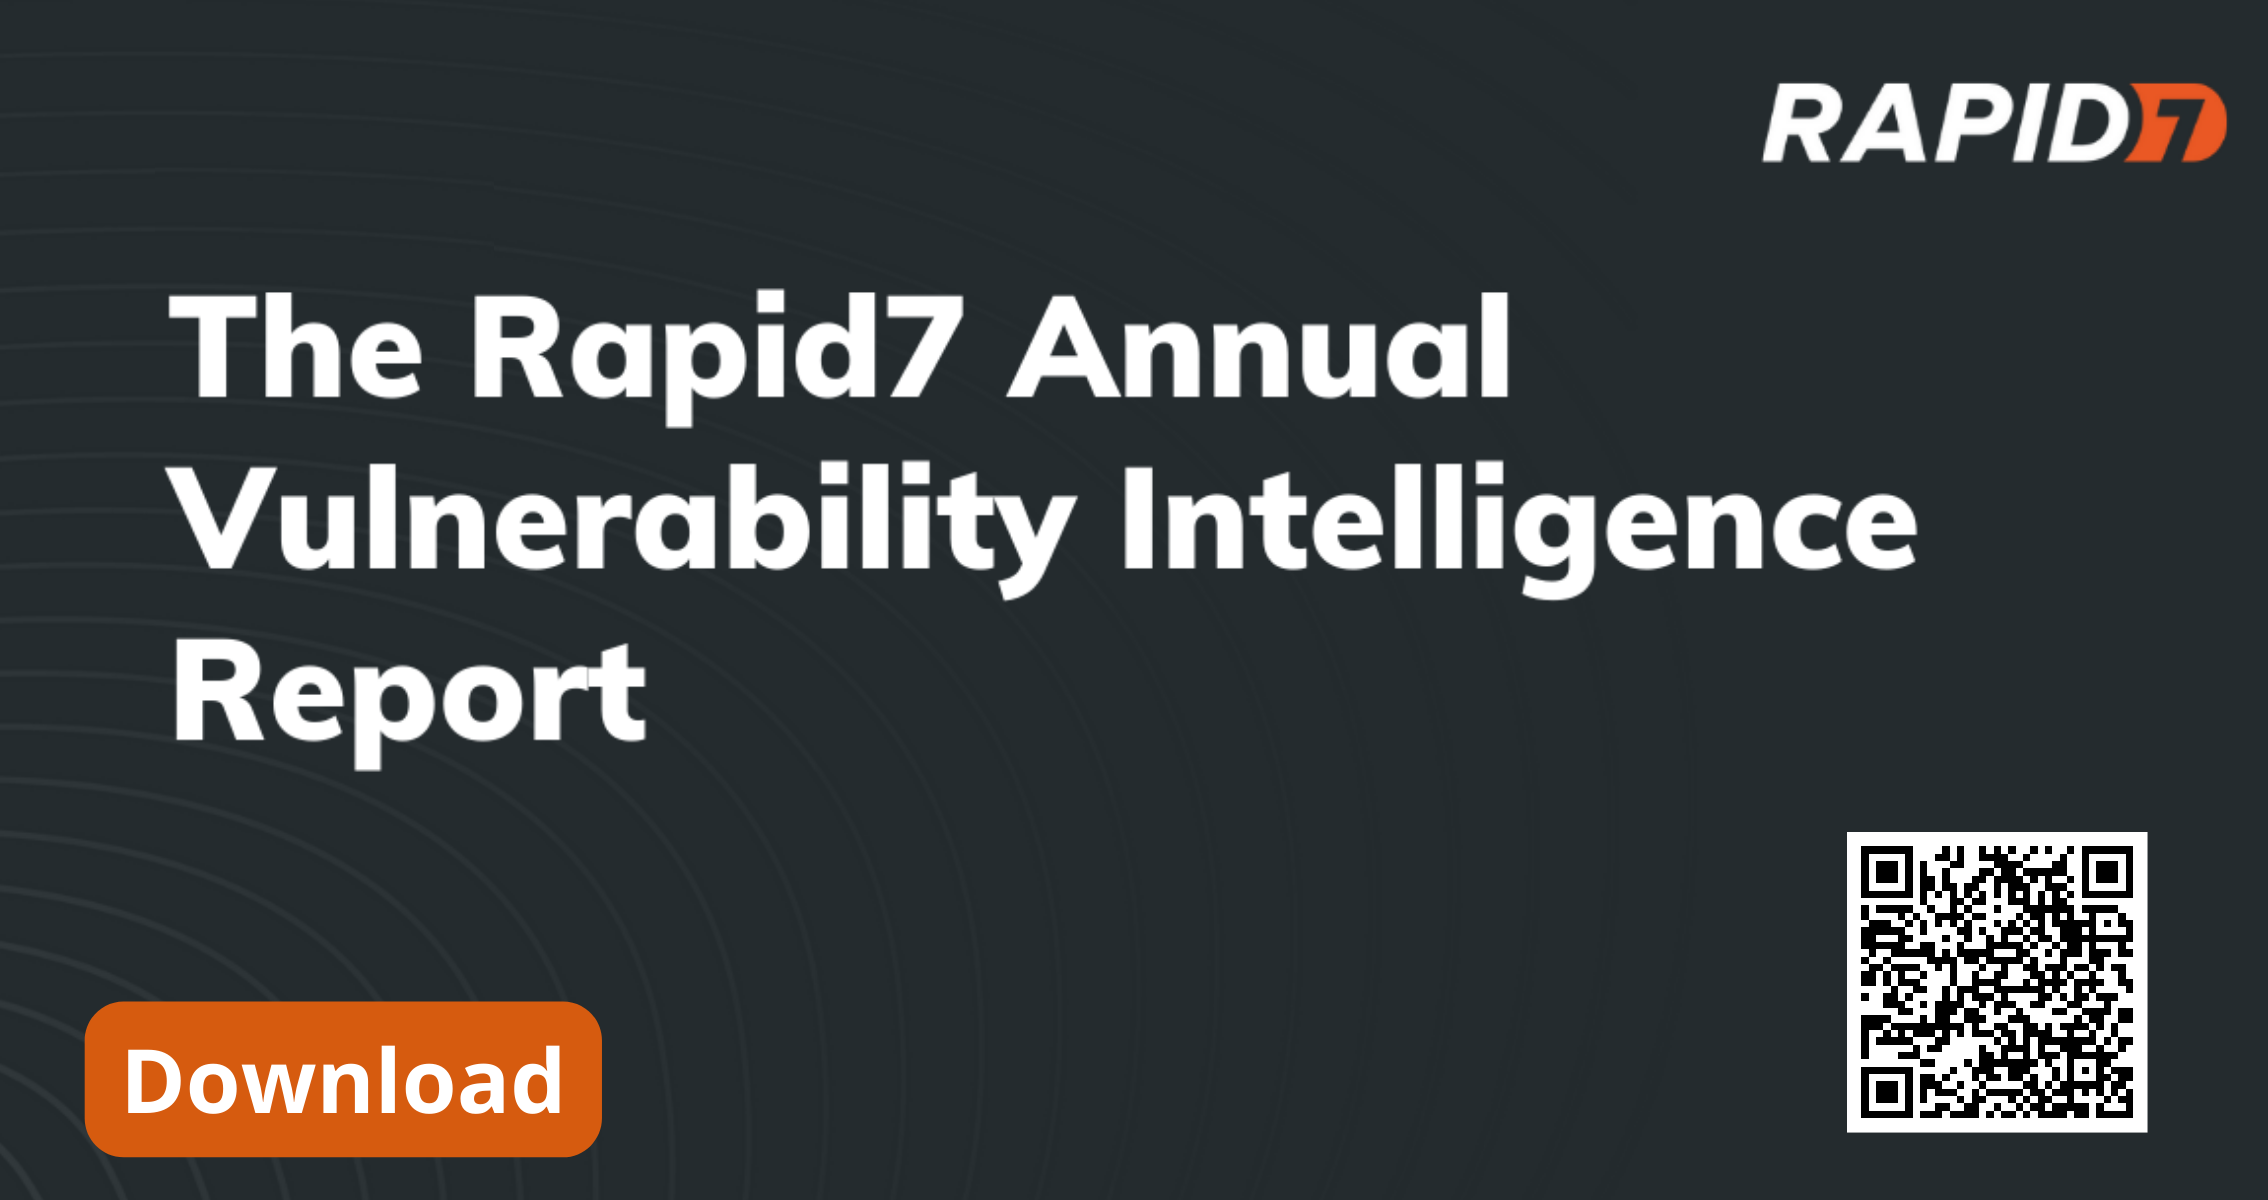 Báo cáo Thông tin Lỗ hổng 2022 của Rapid7 tập trung vào các xu hướng khai thác lỗ hổng